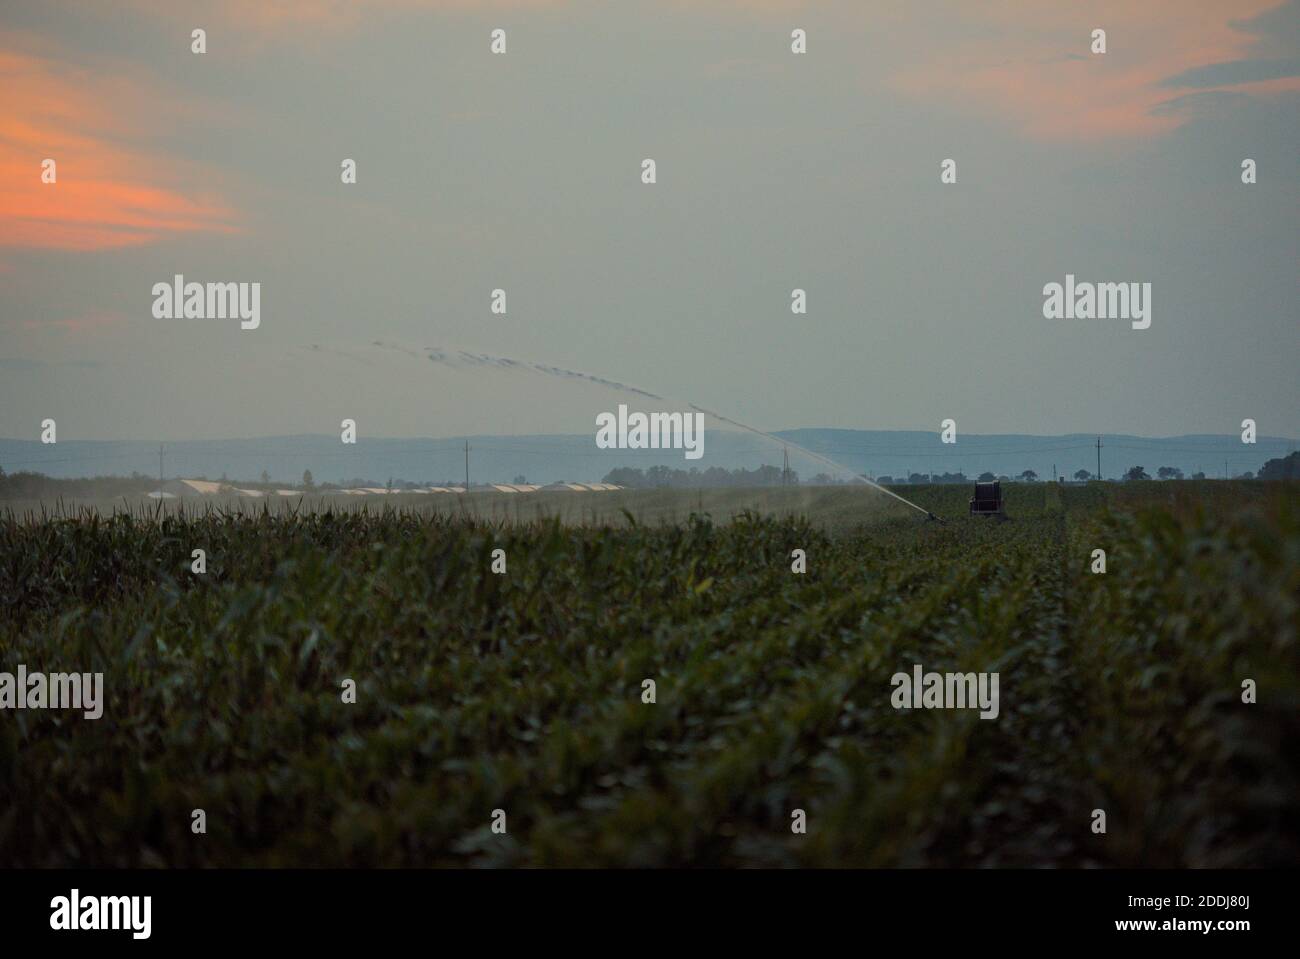 Wasserfontäne einer Bewässerungsanlage am Abend in einem Maisfeld Stock Photo